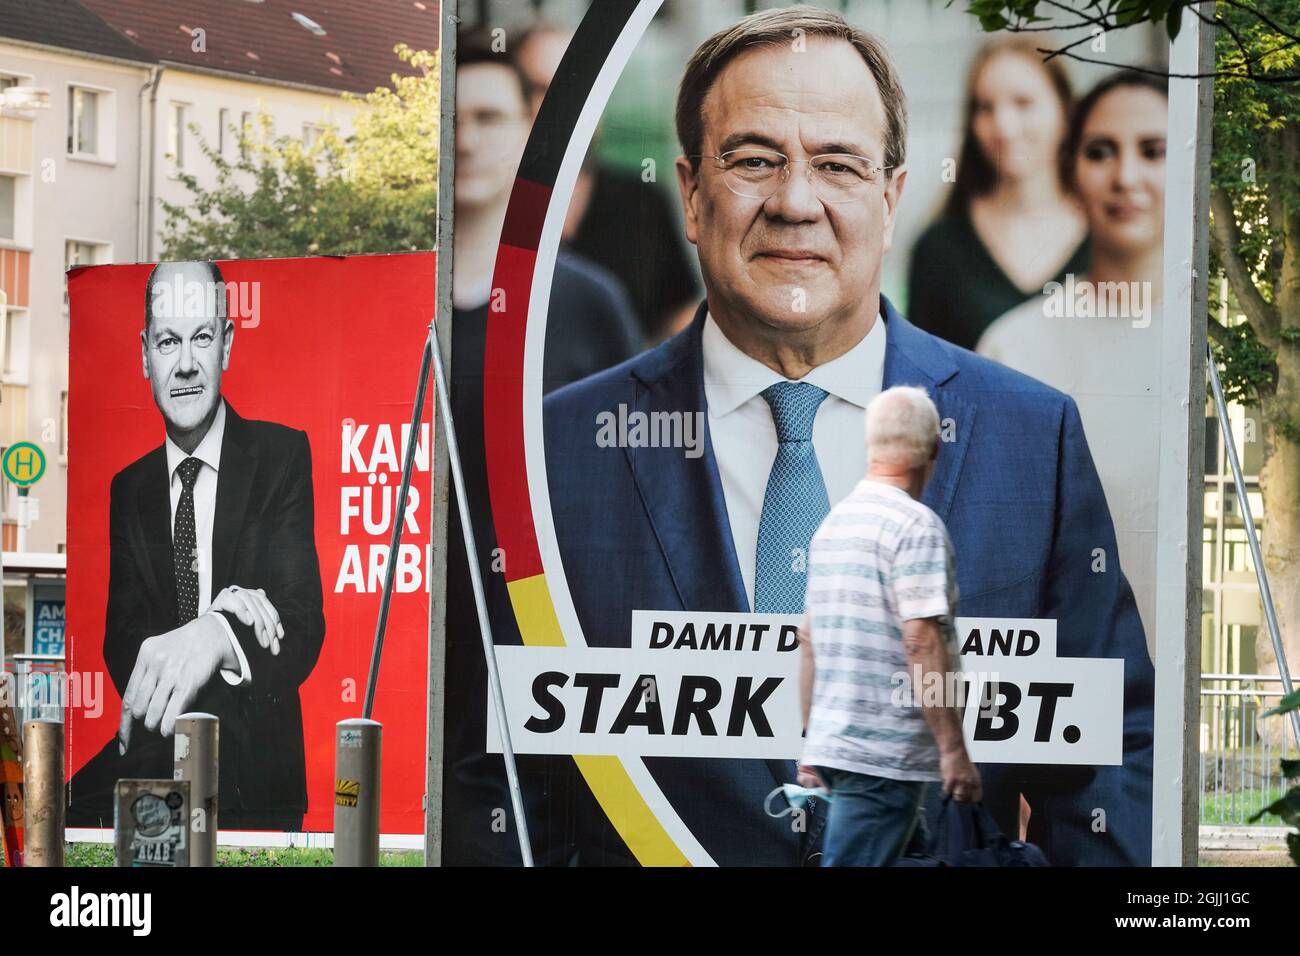 Gloßplakate zur Bundestagswahl am 26.9.2021 mit den beiden Kanzlerkandidaten Armin Laschet CDU (vorne) und Olaf Scholz SPD in Dortmund, 09.09.2021 Foto de stock